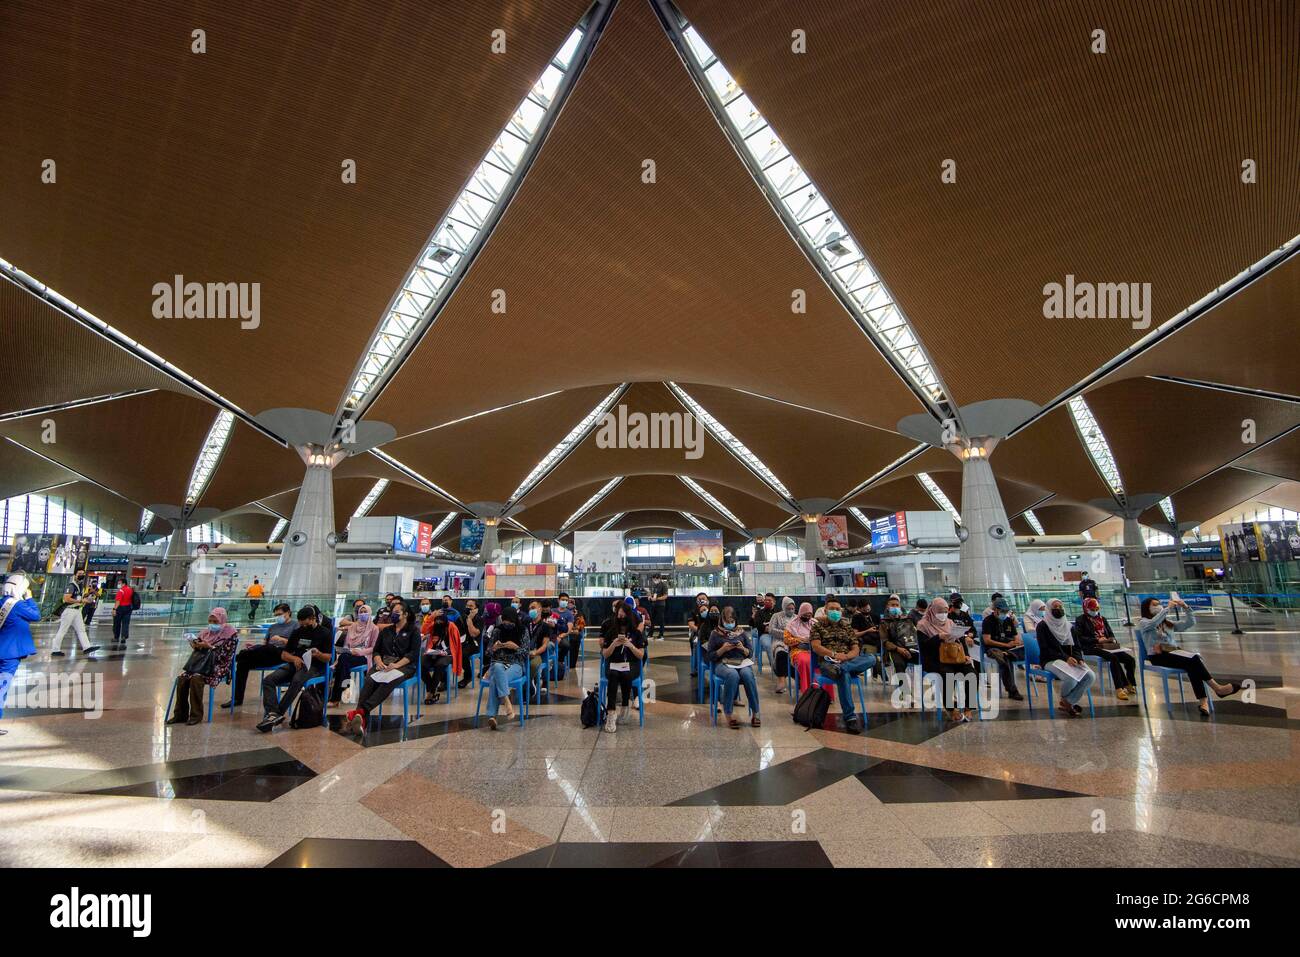 Kuala Lumpur, Malasia. 5th de julio de 2021. Los trabajadores del aeropuerto esperan recibir inyecciones de vacuna COVID-19 en el Aeropuerto Internacional de Kuala Lumpur en Sepang, Malasia, 5 de julio de 2021. Malasia notificó otras 6.387 nuevas infecciones por COVID-19, con lo que el total nacional llegó a 785.039, informó el Ministerio de Salud el lunes. Crédito: Chong Voon Chung/Xinhua/Alamy Live News Foto de stock